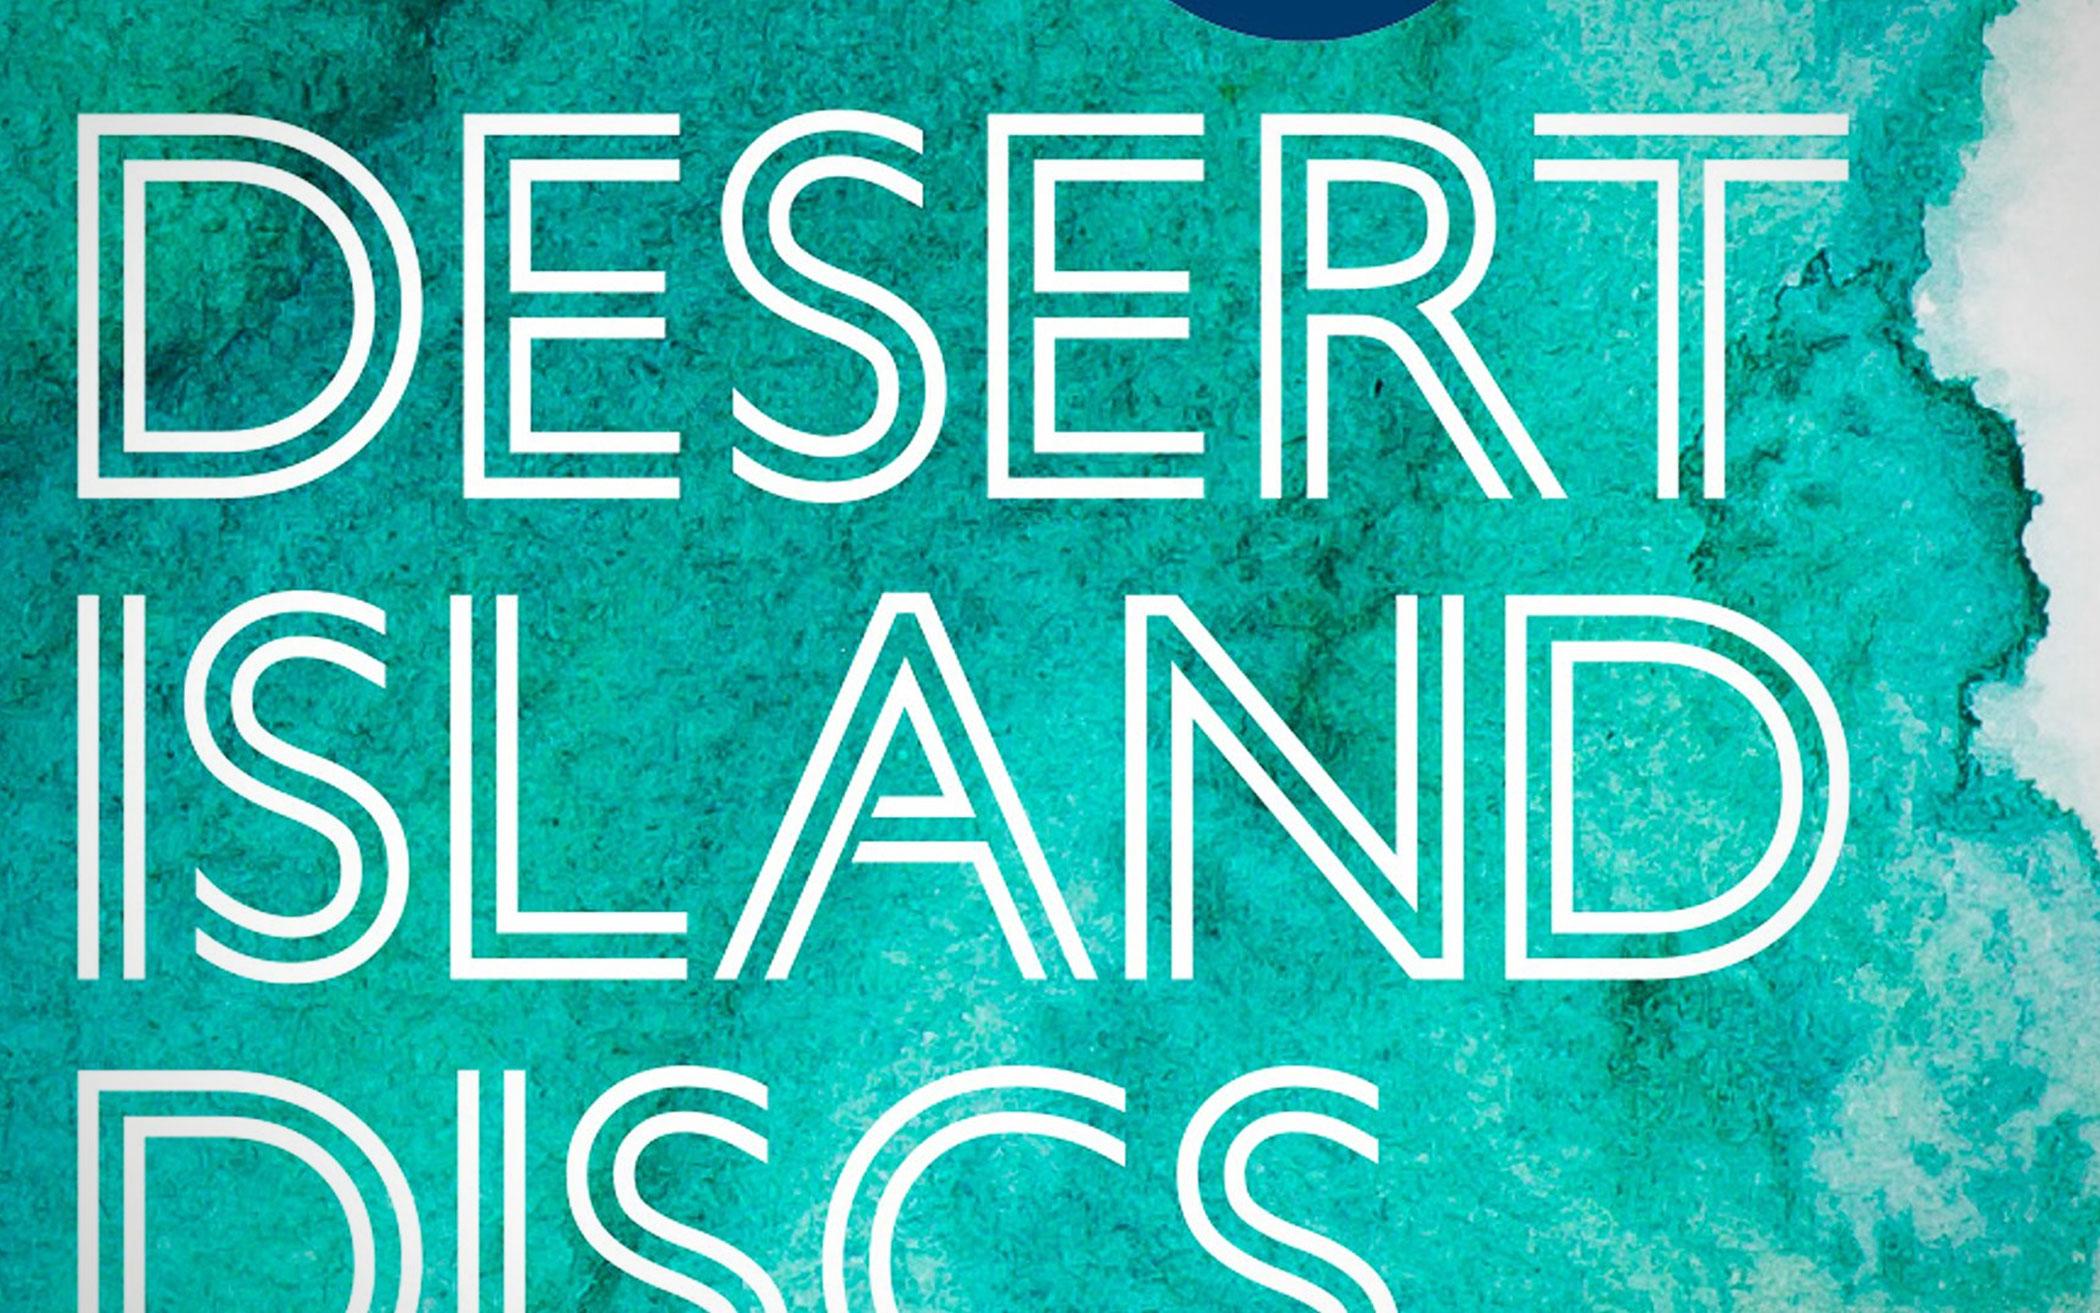 Desert Island Discs - Podcast